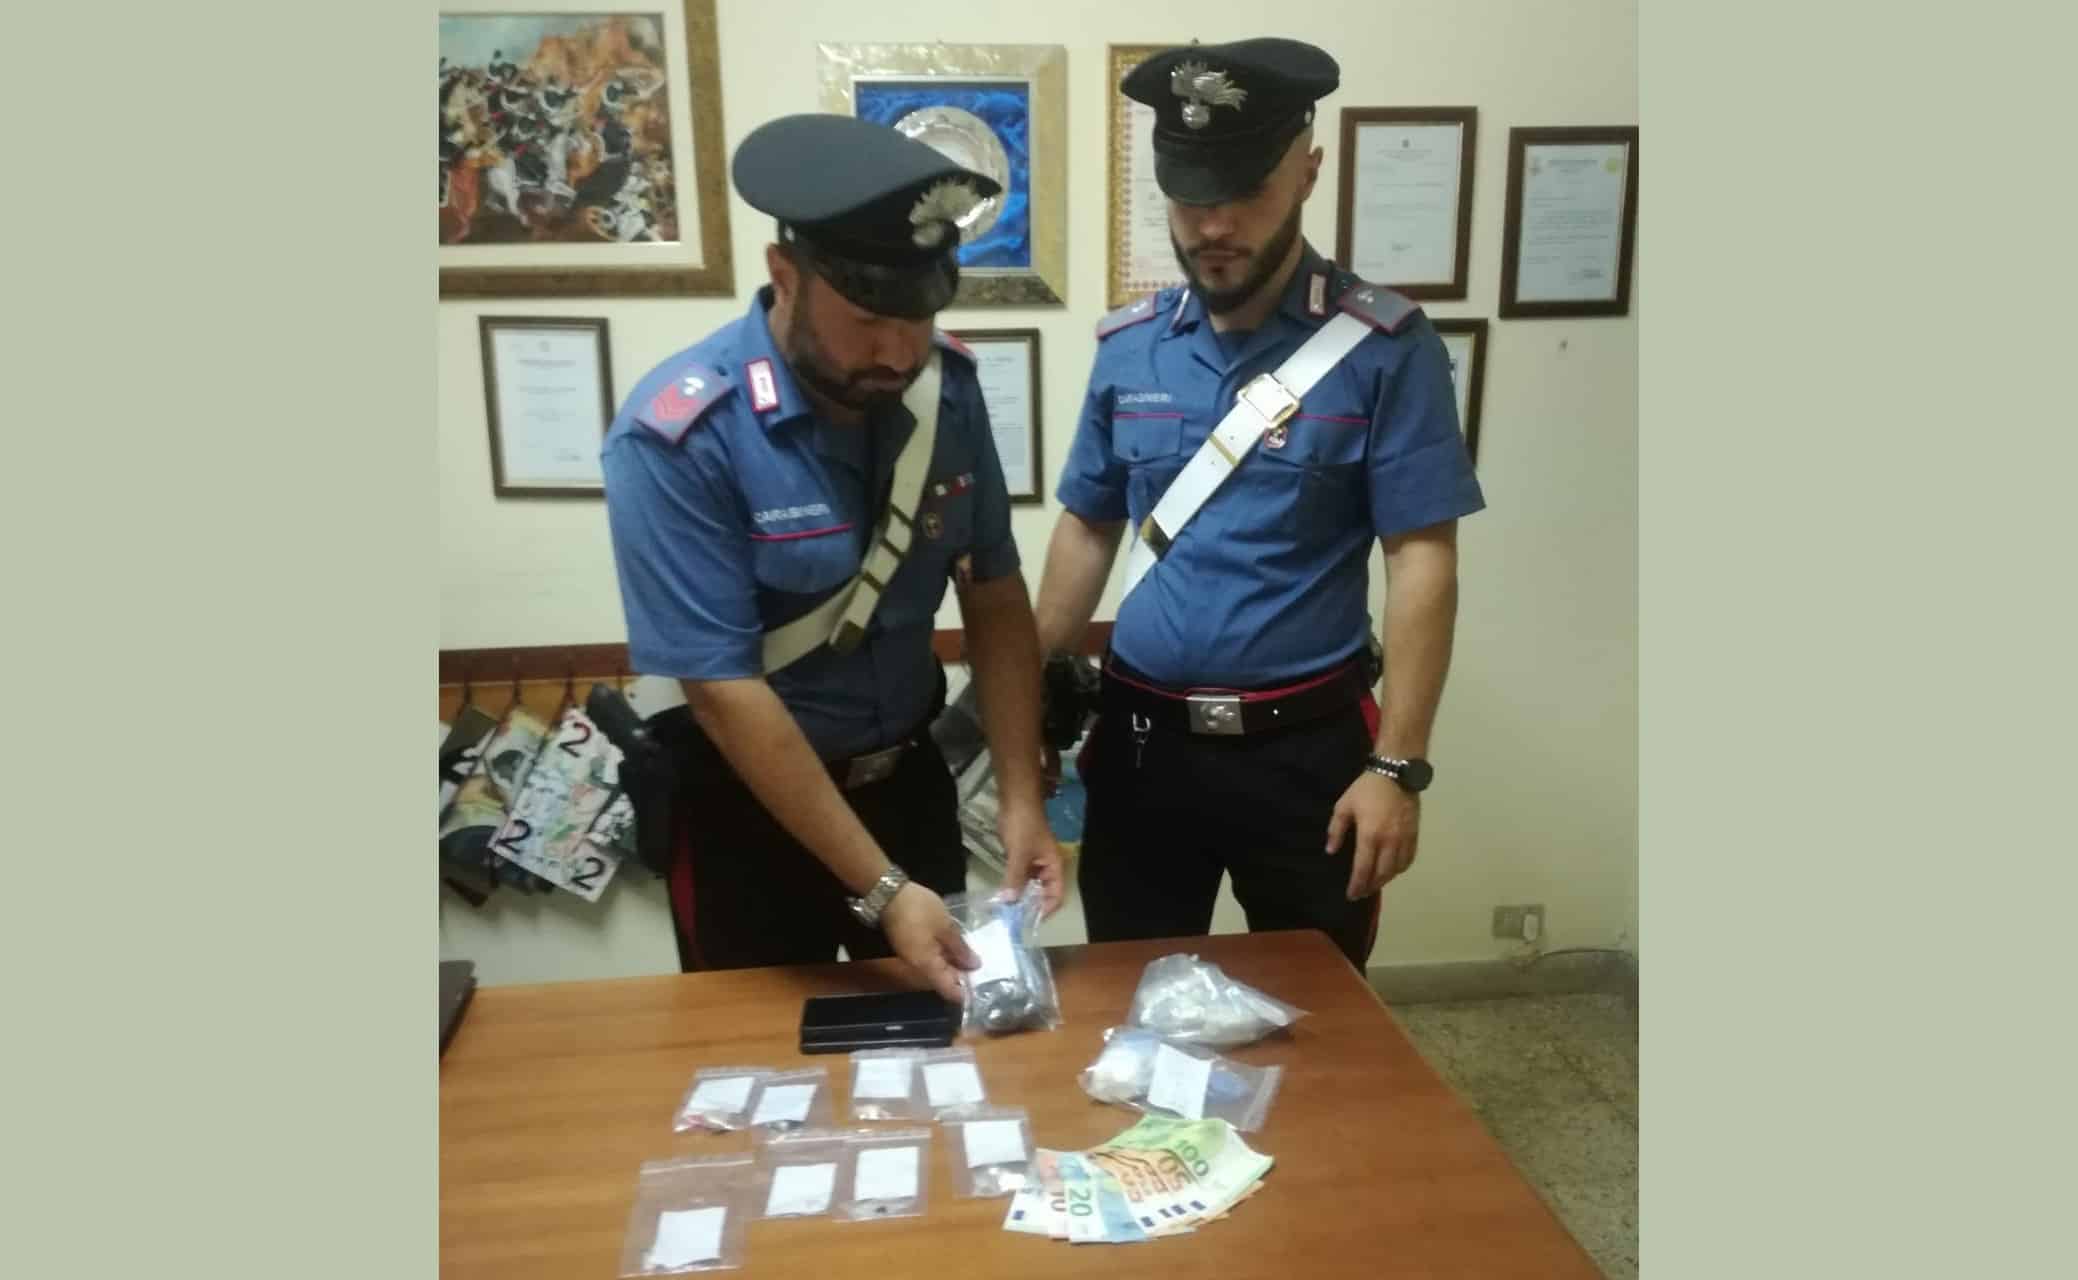 A spasso con la droga in borsetta e in auto: arrestata una donna dai carabinieri